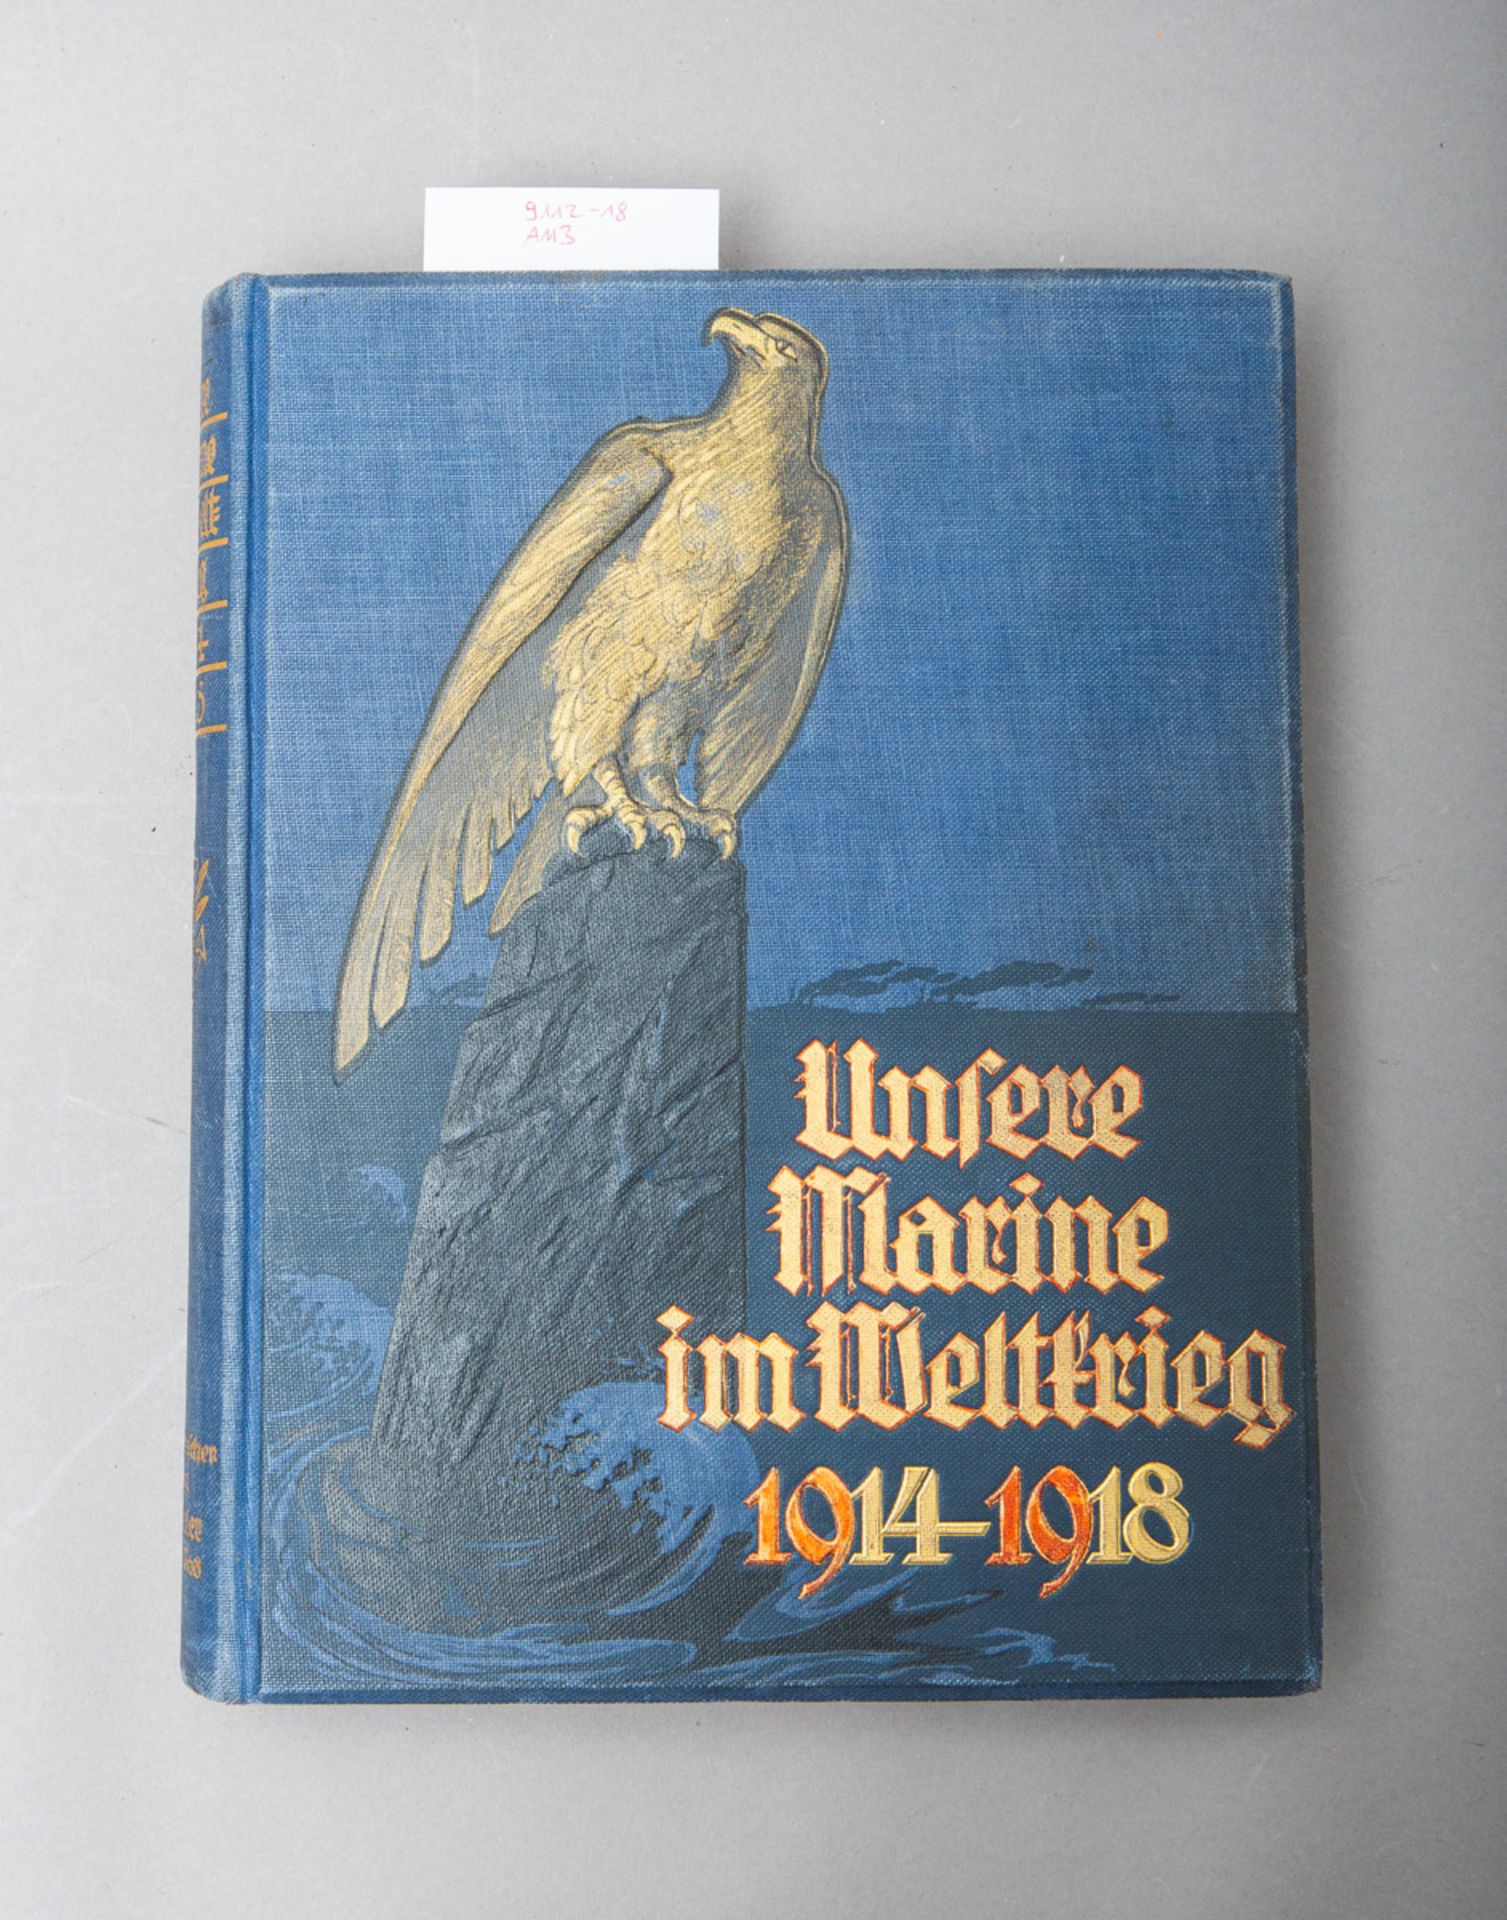 von Mantey, Eberhard (Hrsg.), "Unsere Marine im Weltkrieg 1914 - 1918"